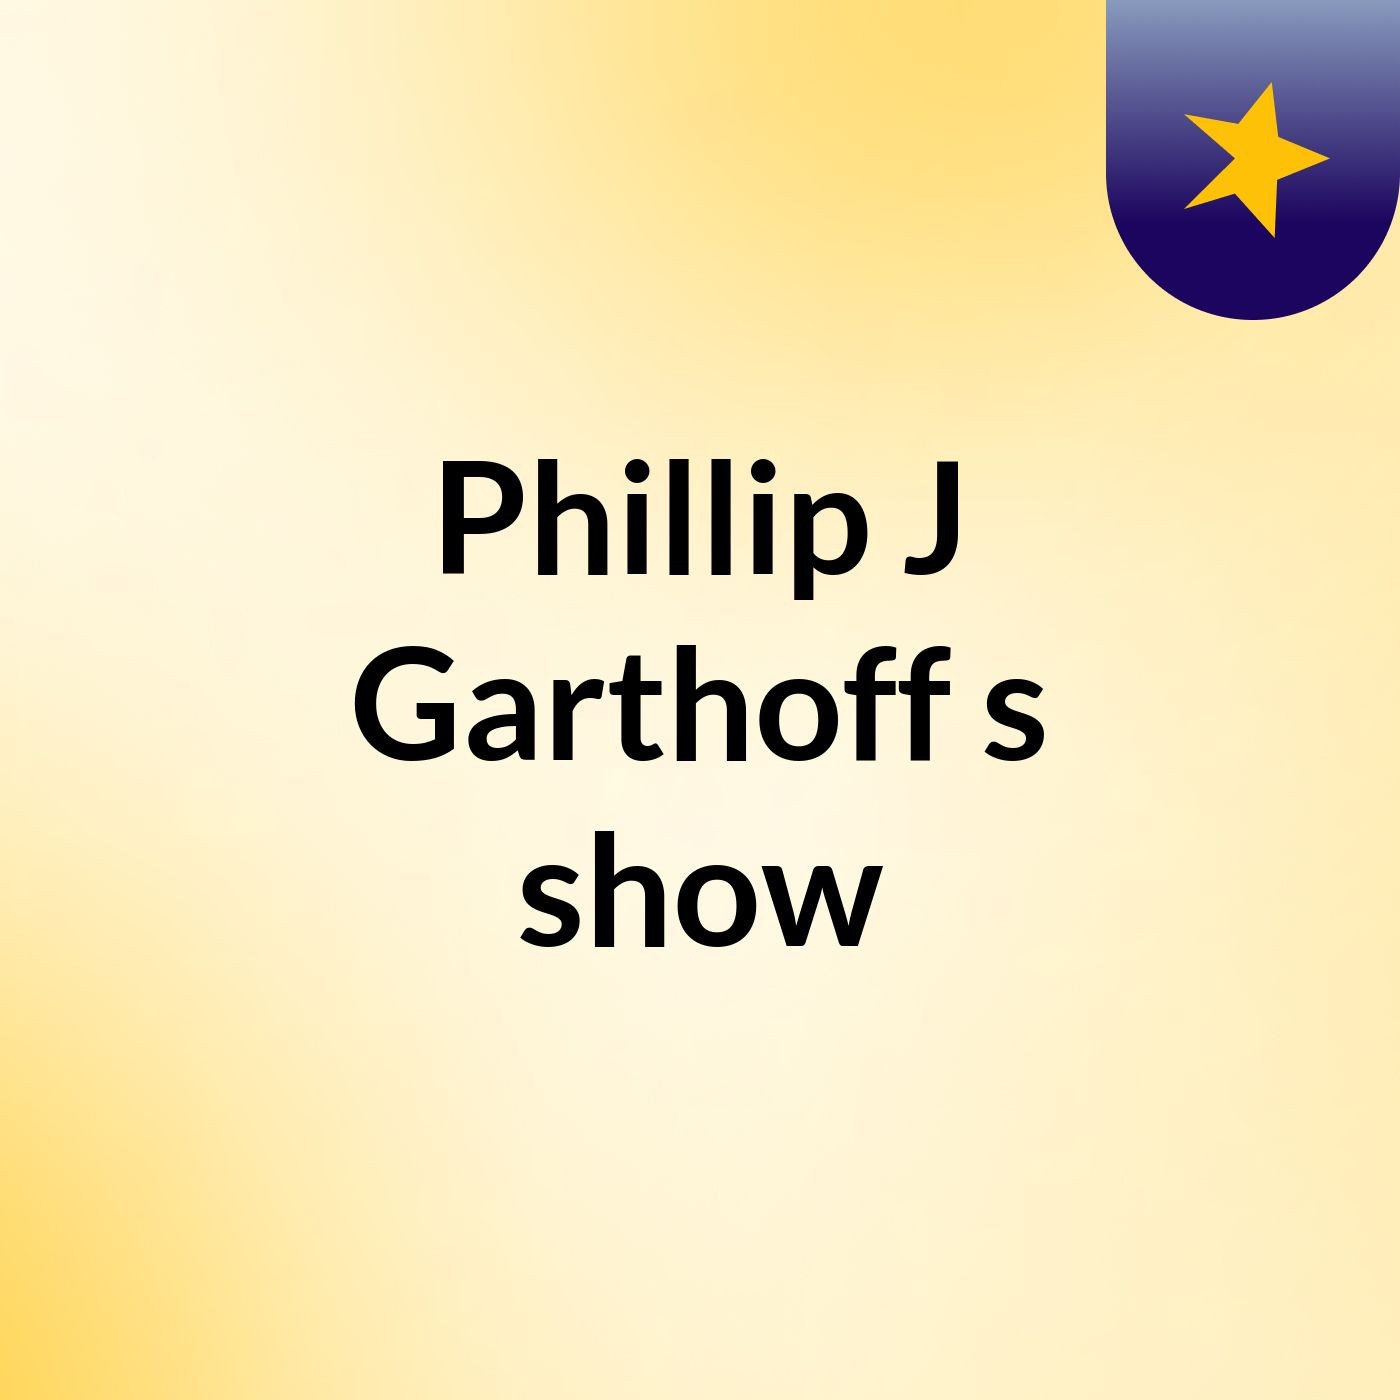 Episode 18 - Phillip J Garthoff's show